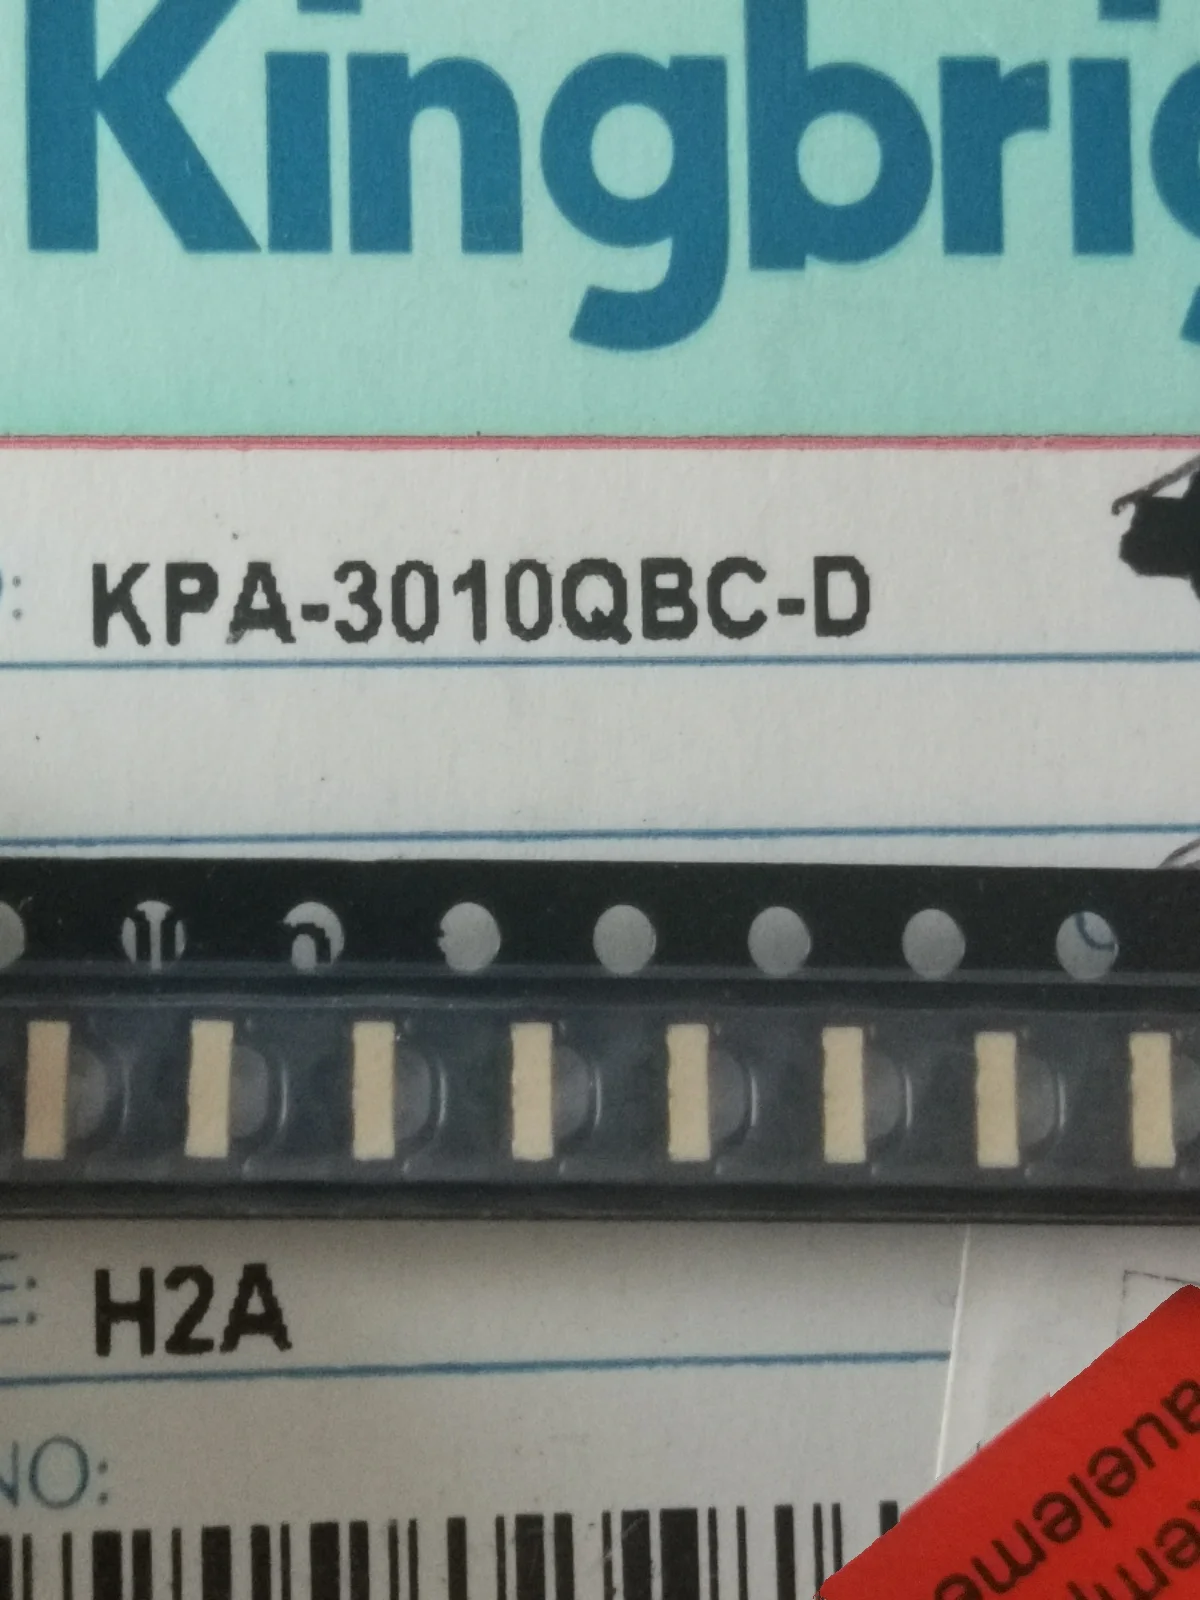 

100PCS/KPA-3010QBC-D 1204(3010) Side Blue Light Highlight LED